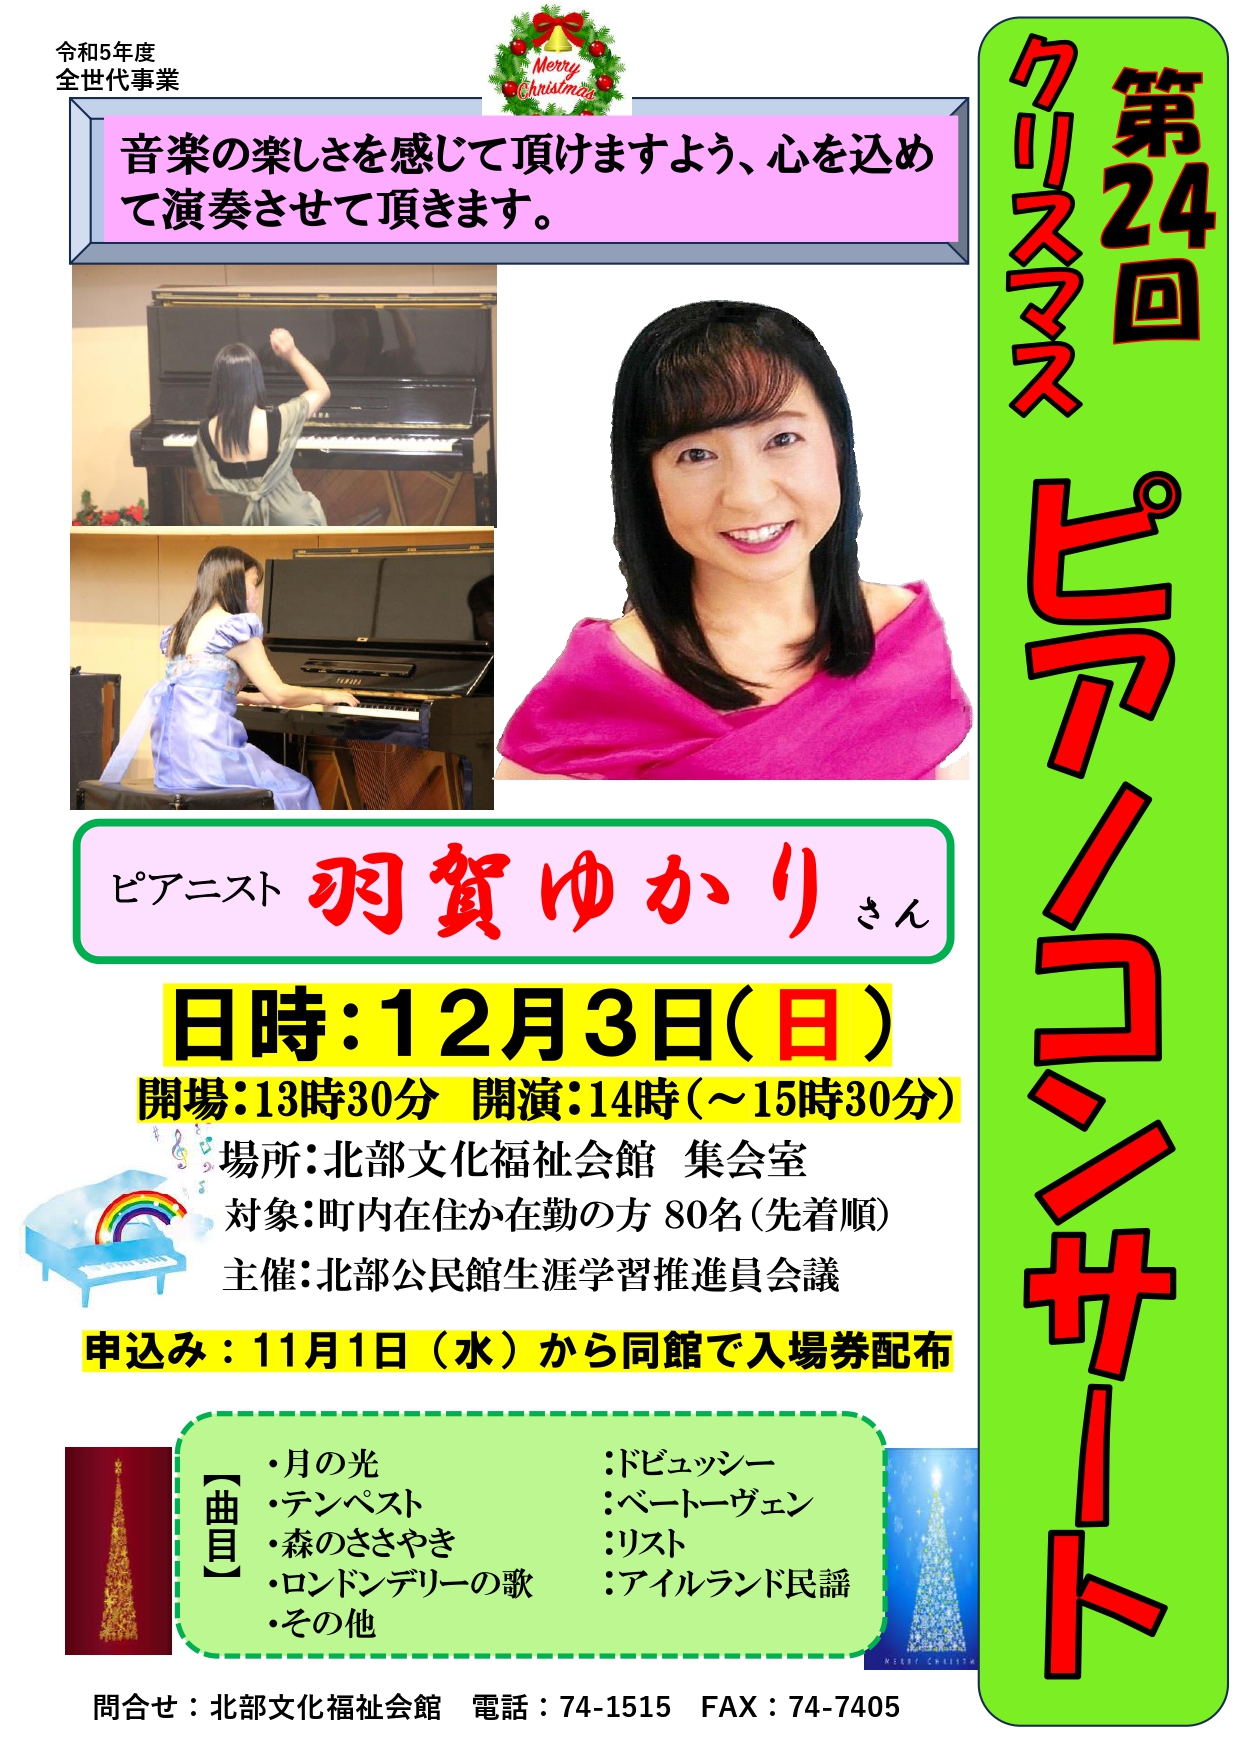 「クリスマスピアノコンサート」開催のお知らせの画像